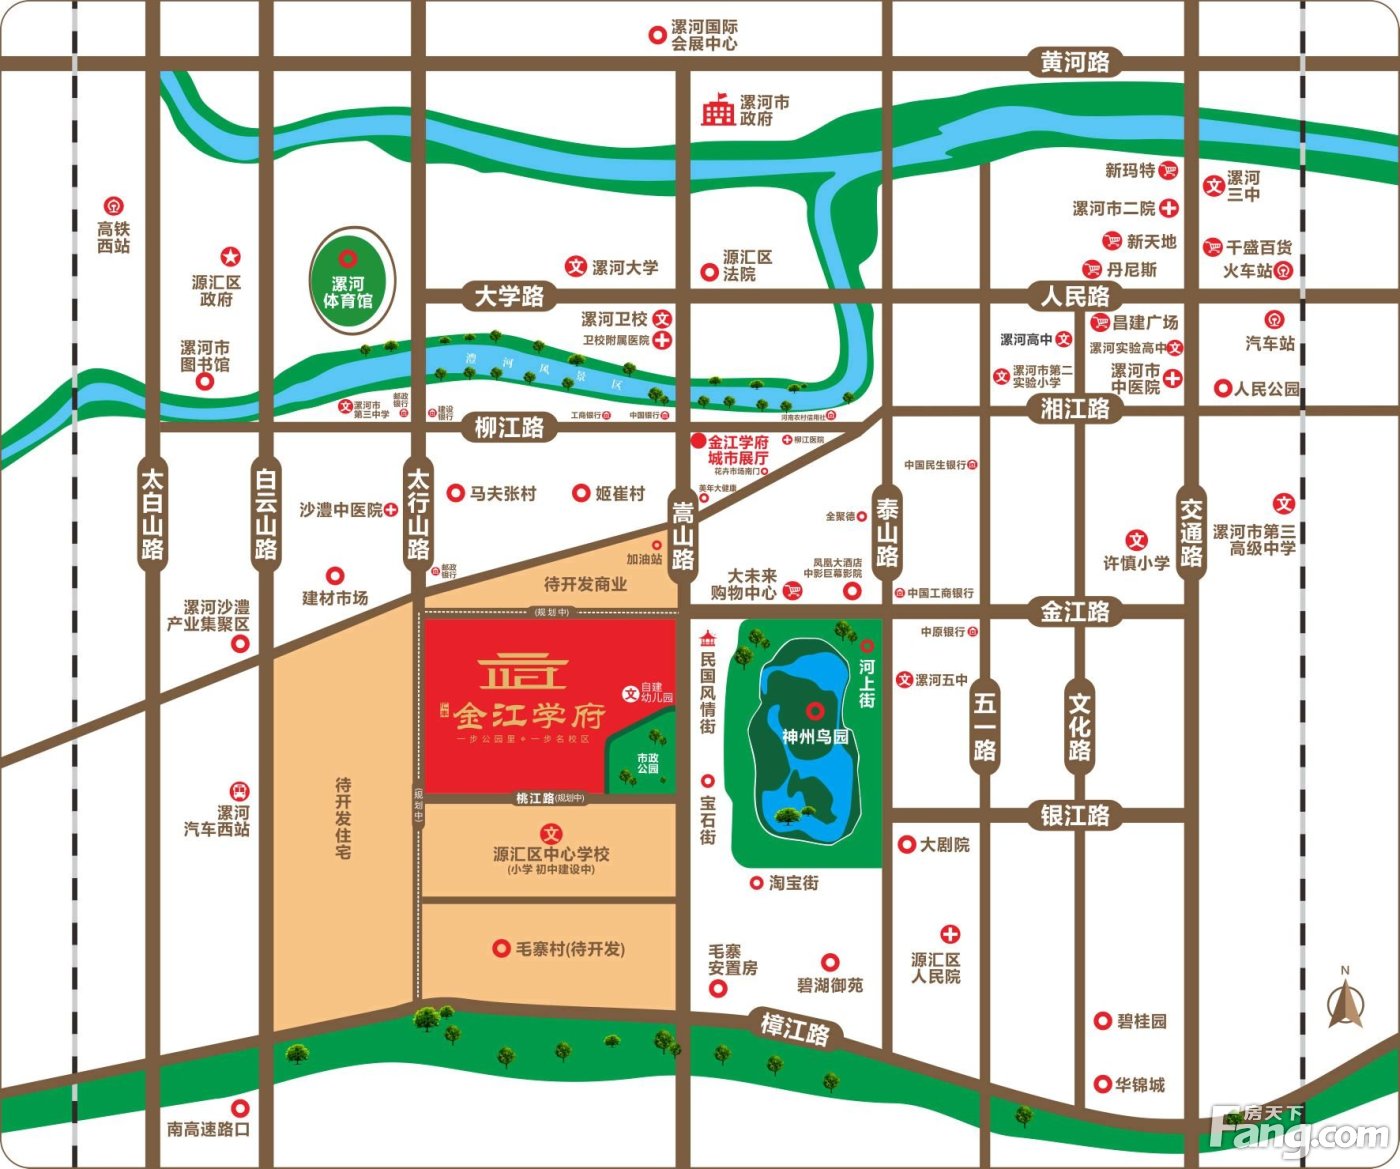 漯河源汇区规划示意图图片